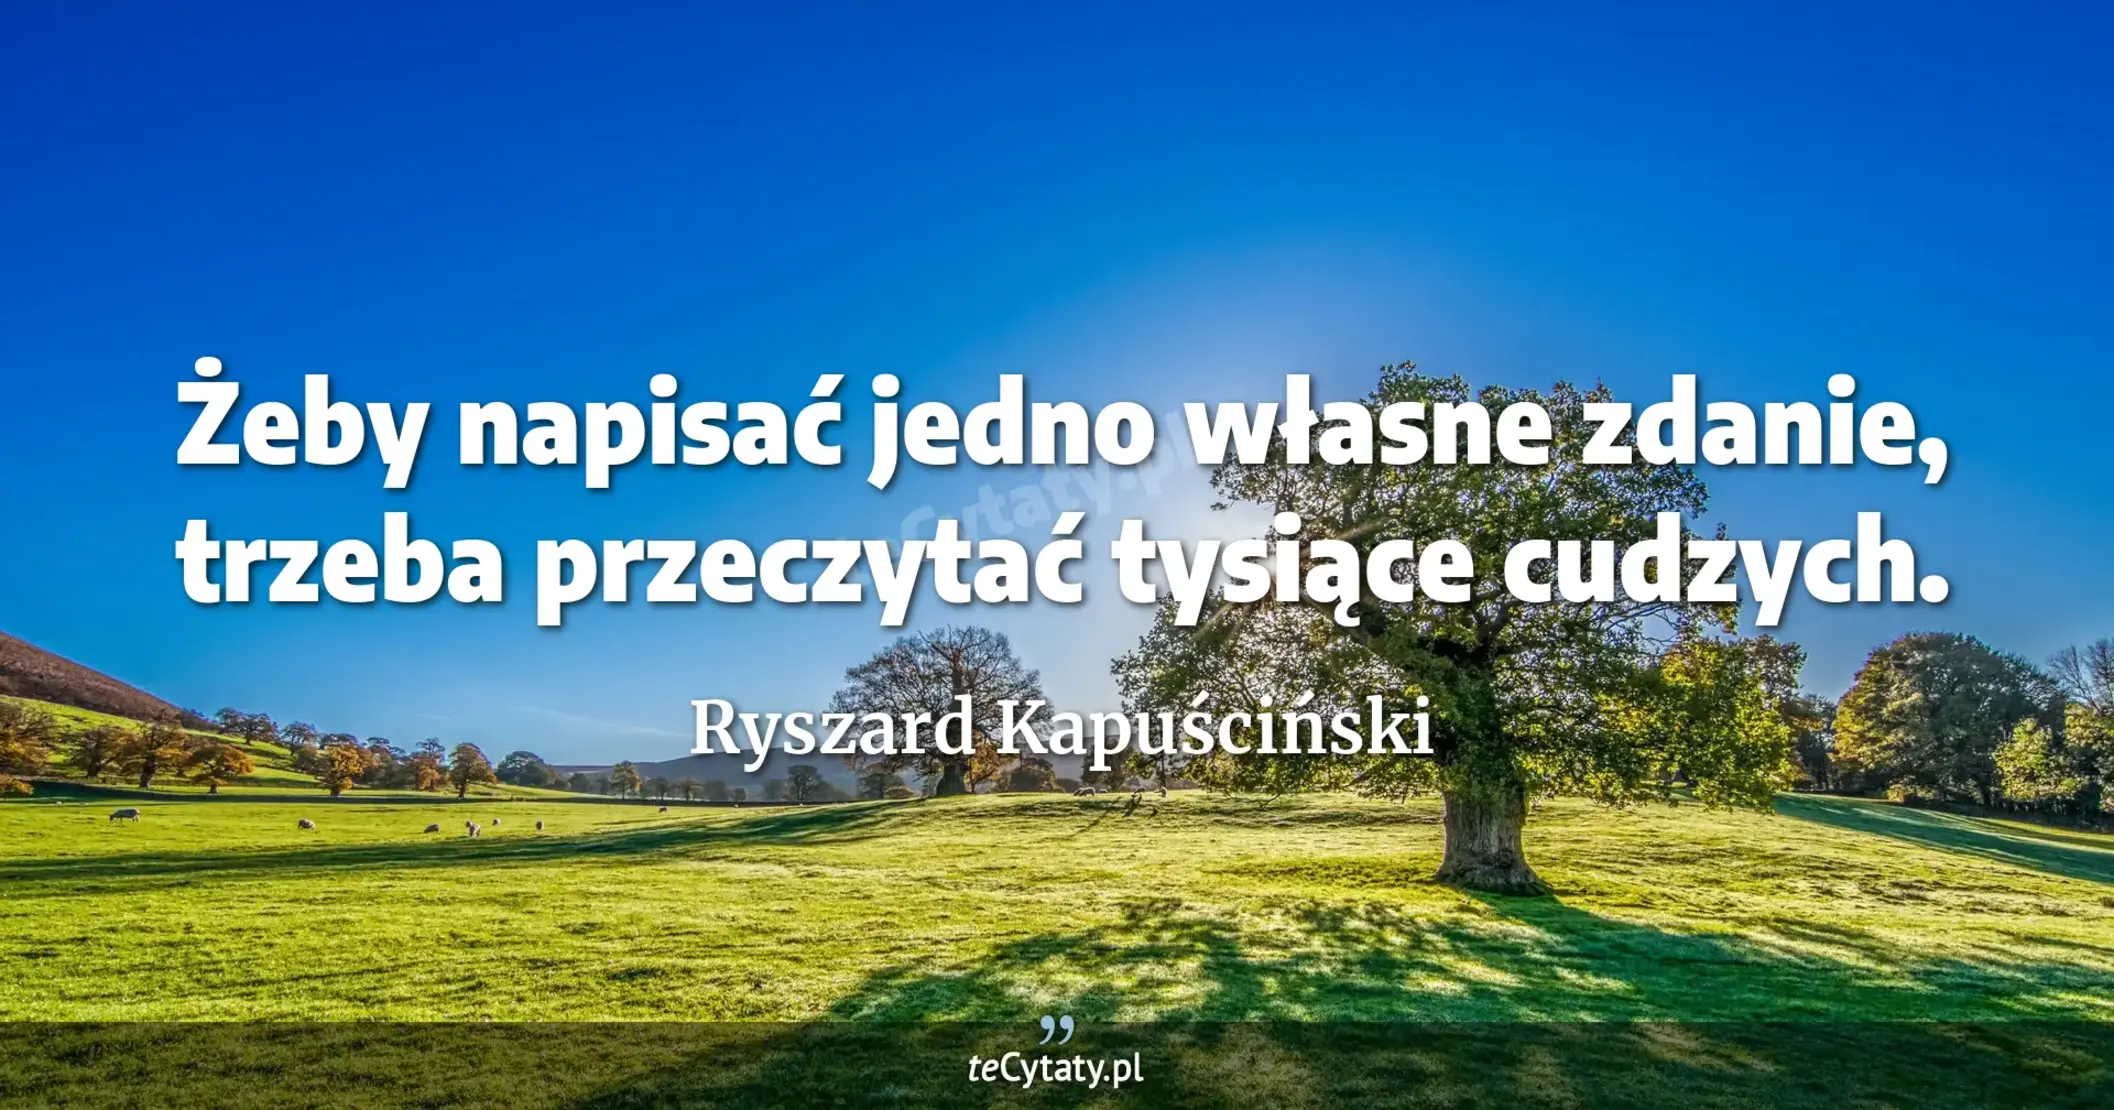 Żeby napisać jedno własne zdanie, trzeba przeczytać tysiące cudzych. - Ryszard Kapuściński